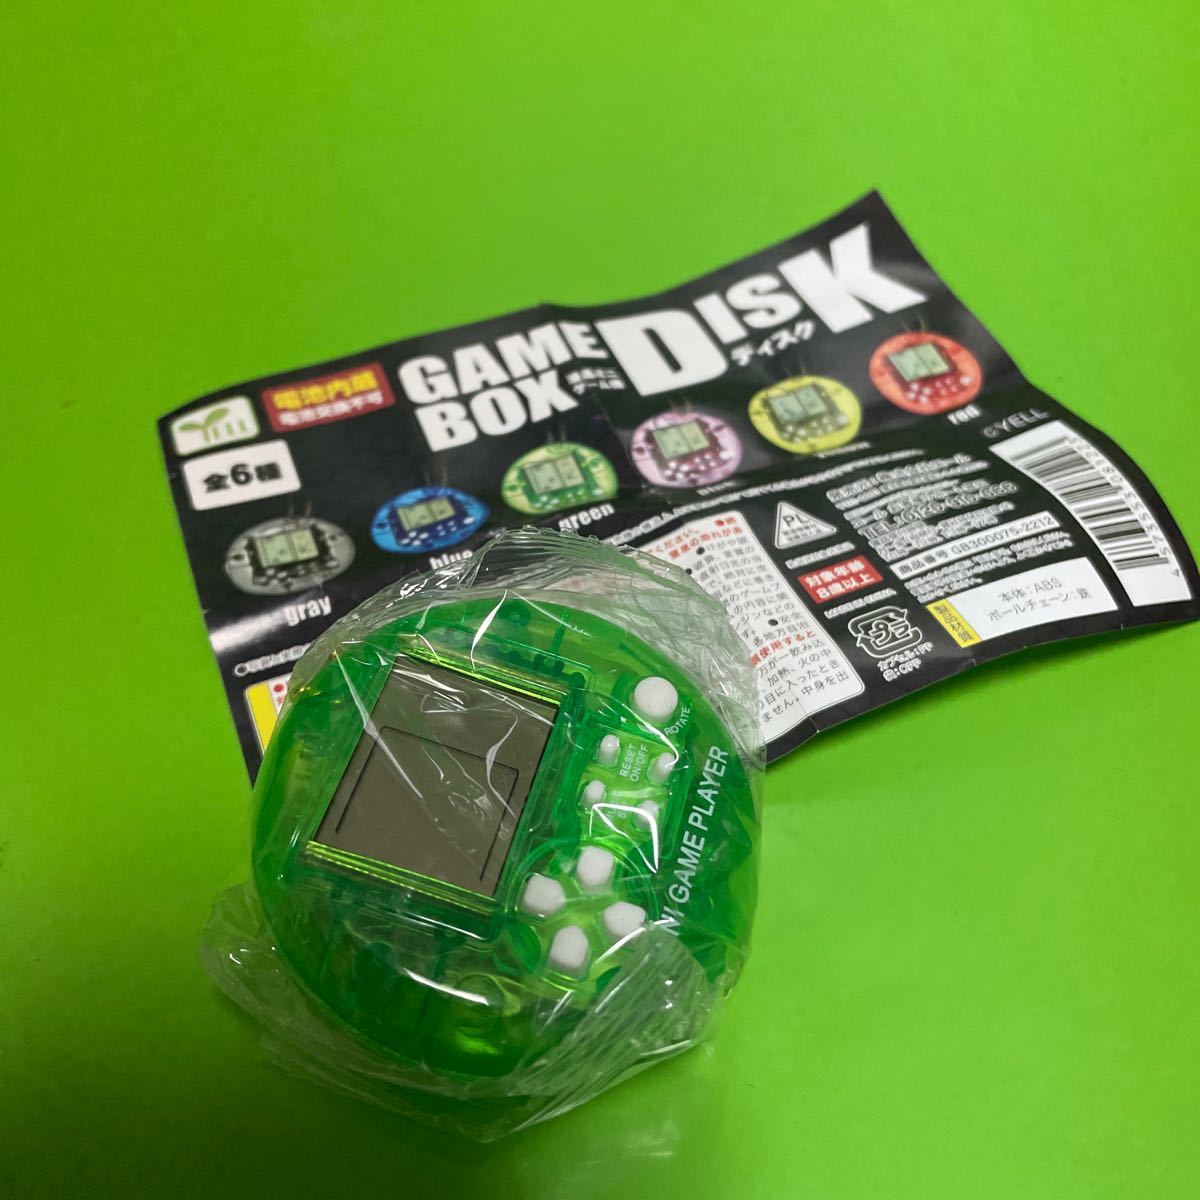 YELLe-ru liquid crystal Mini game machine GAME BOX DISK # green [ outside fixed form postage 120 jpy ] Capsule toy Gacha Gacha gashapon 